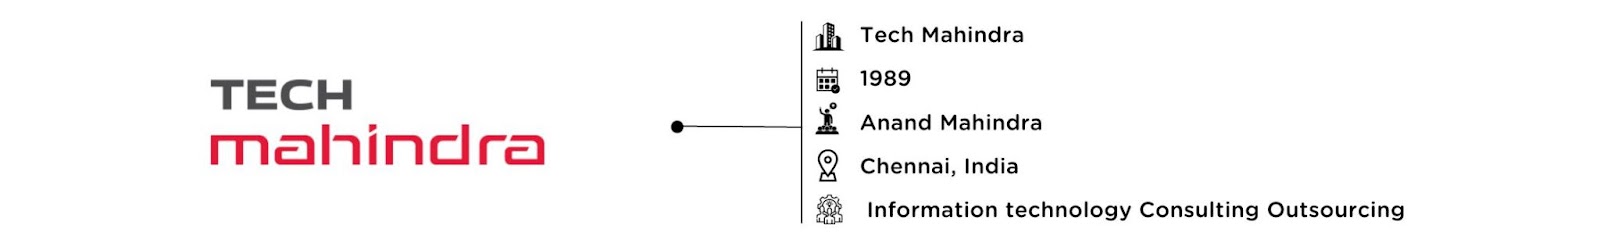 Tech Mahindra: Software Development Company in India